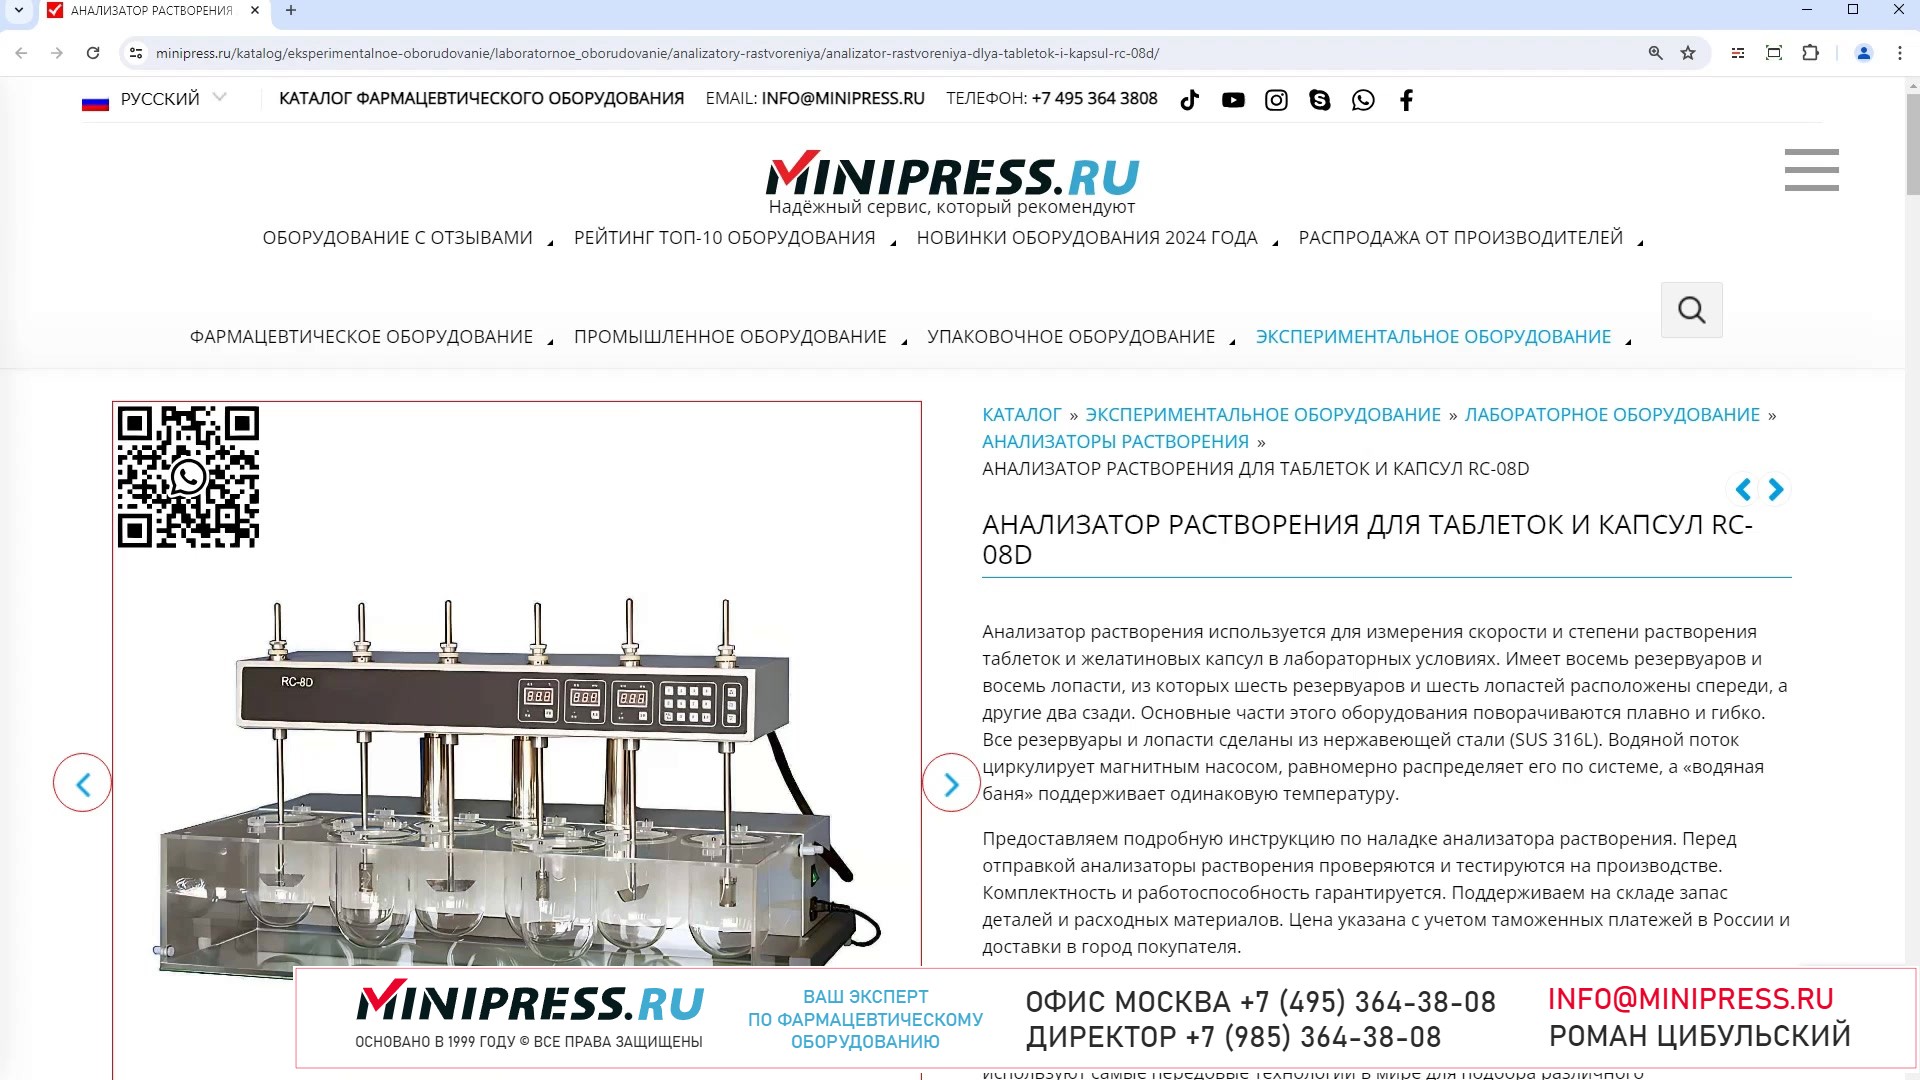 Minipress.ru Анализатор растворения для таблеток и капсул RC-08D